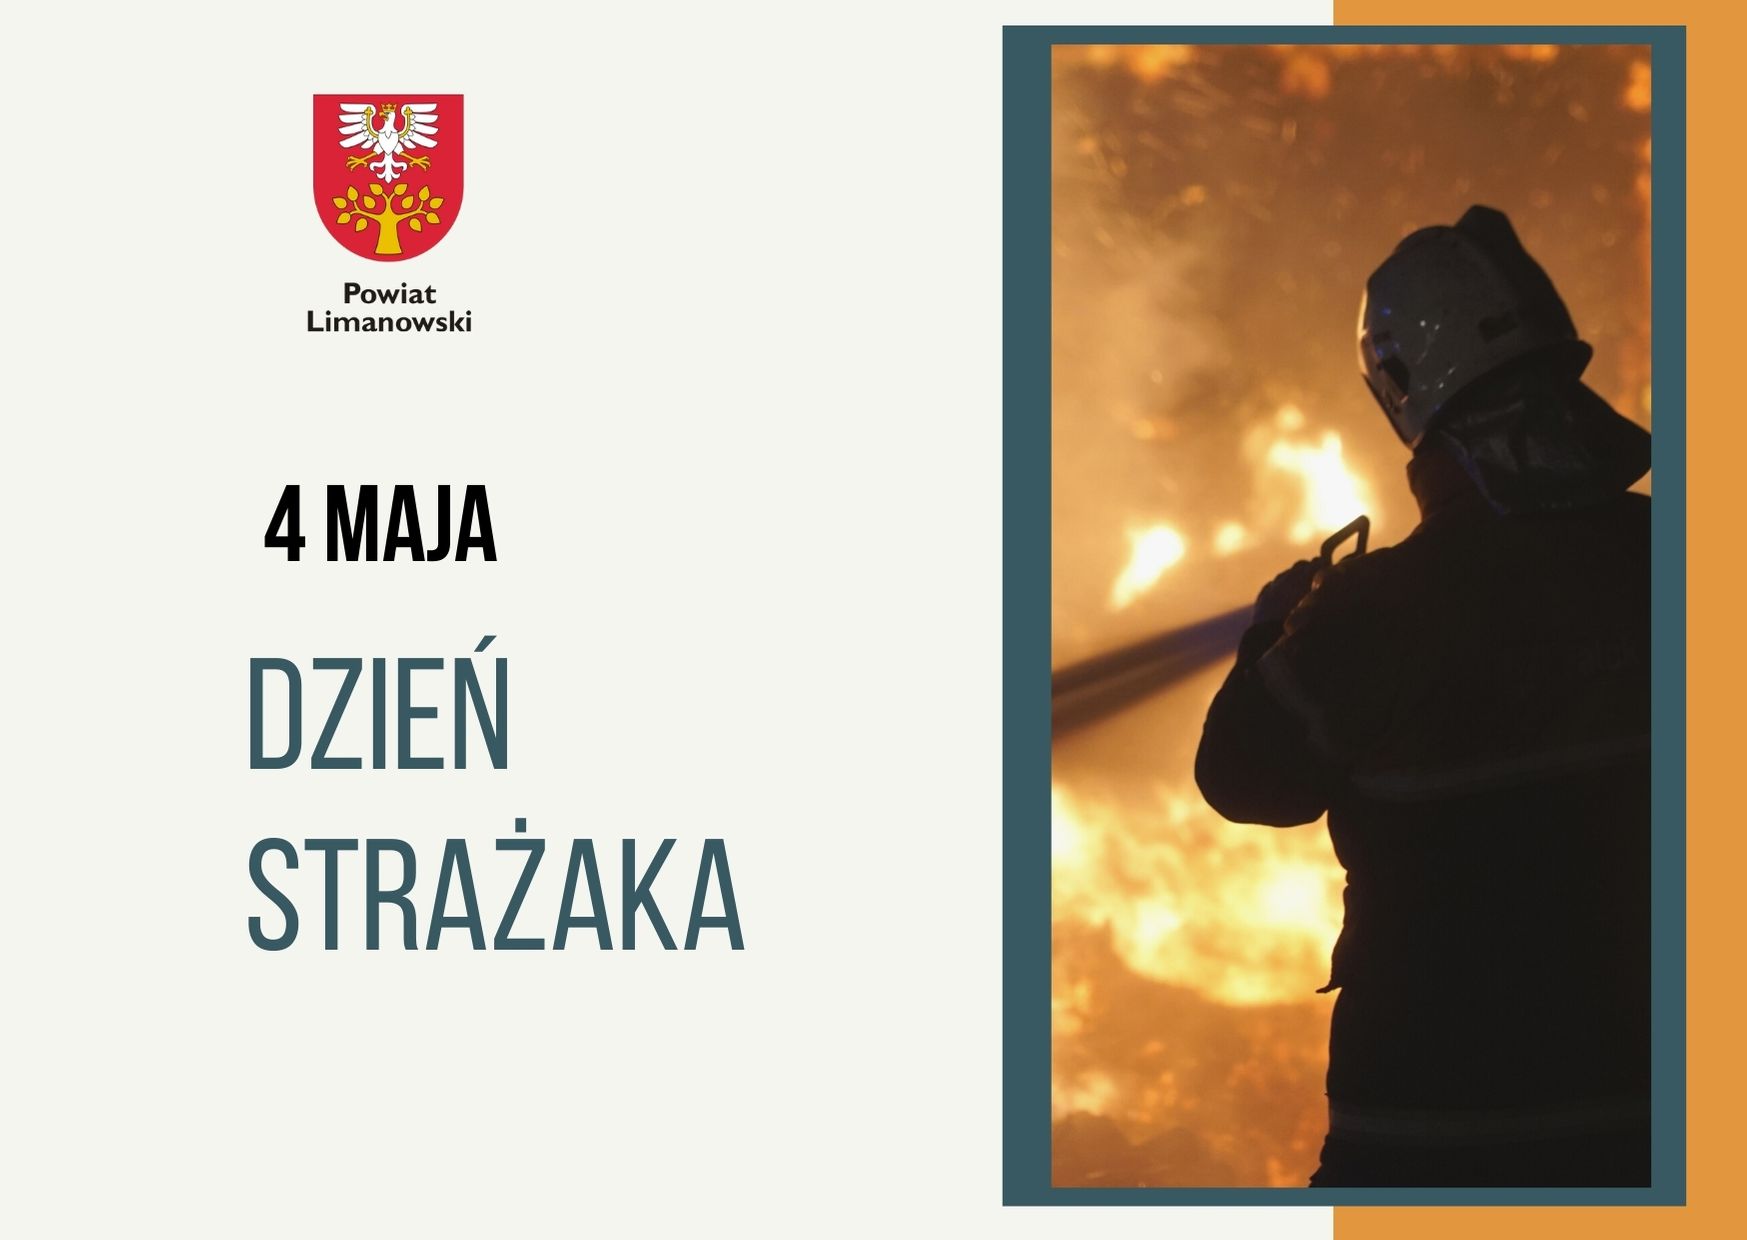 Plakat. Napis 4 maja DZIEŃ STRAŻAKA. Zdjęcie gaszącego pożara druha.